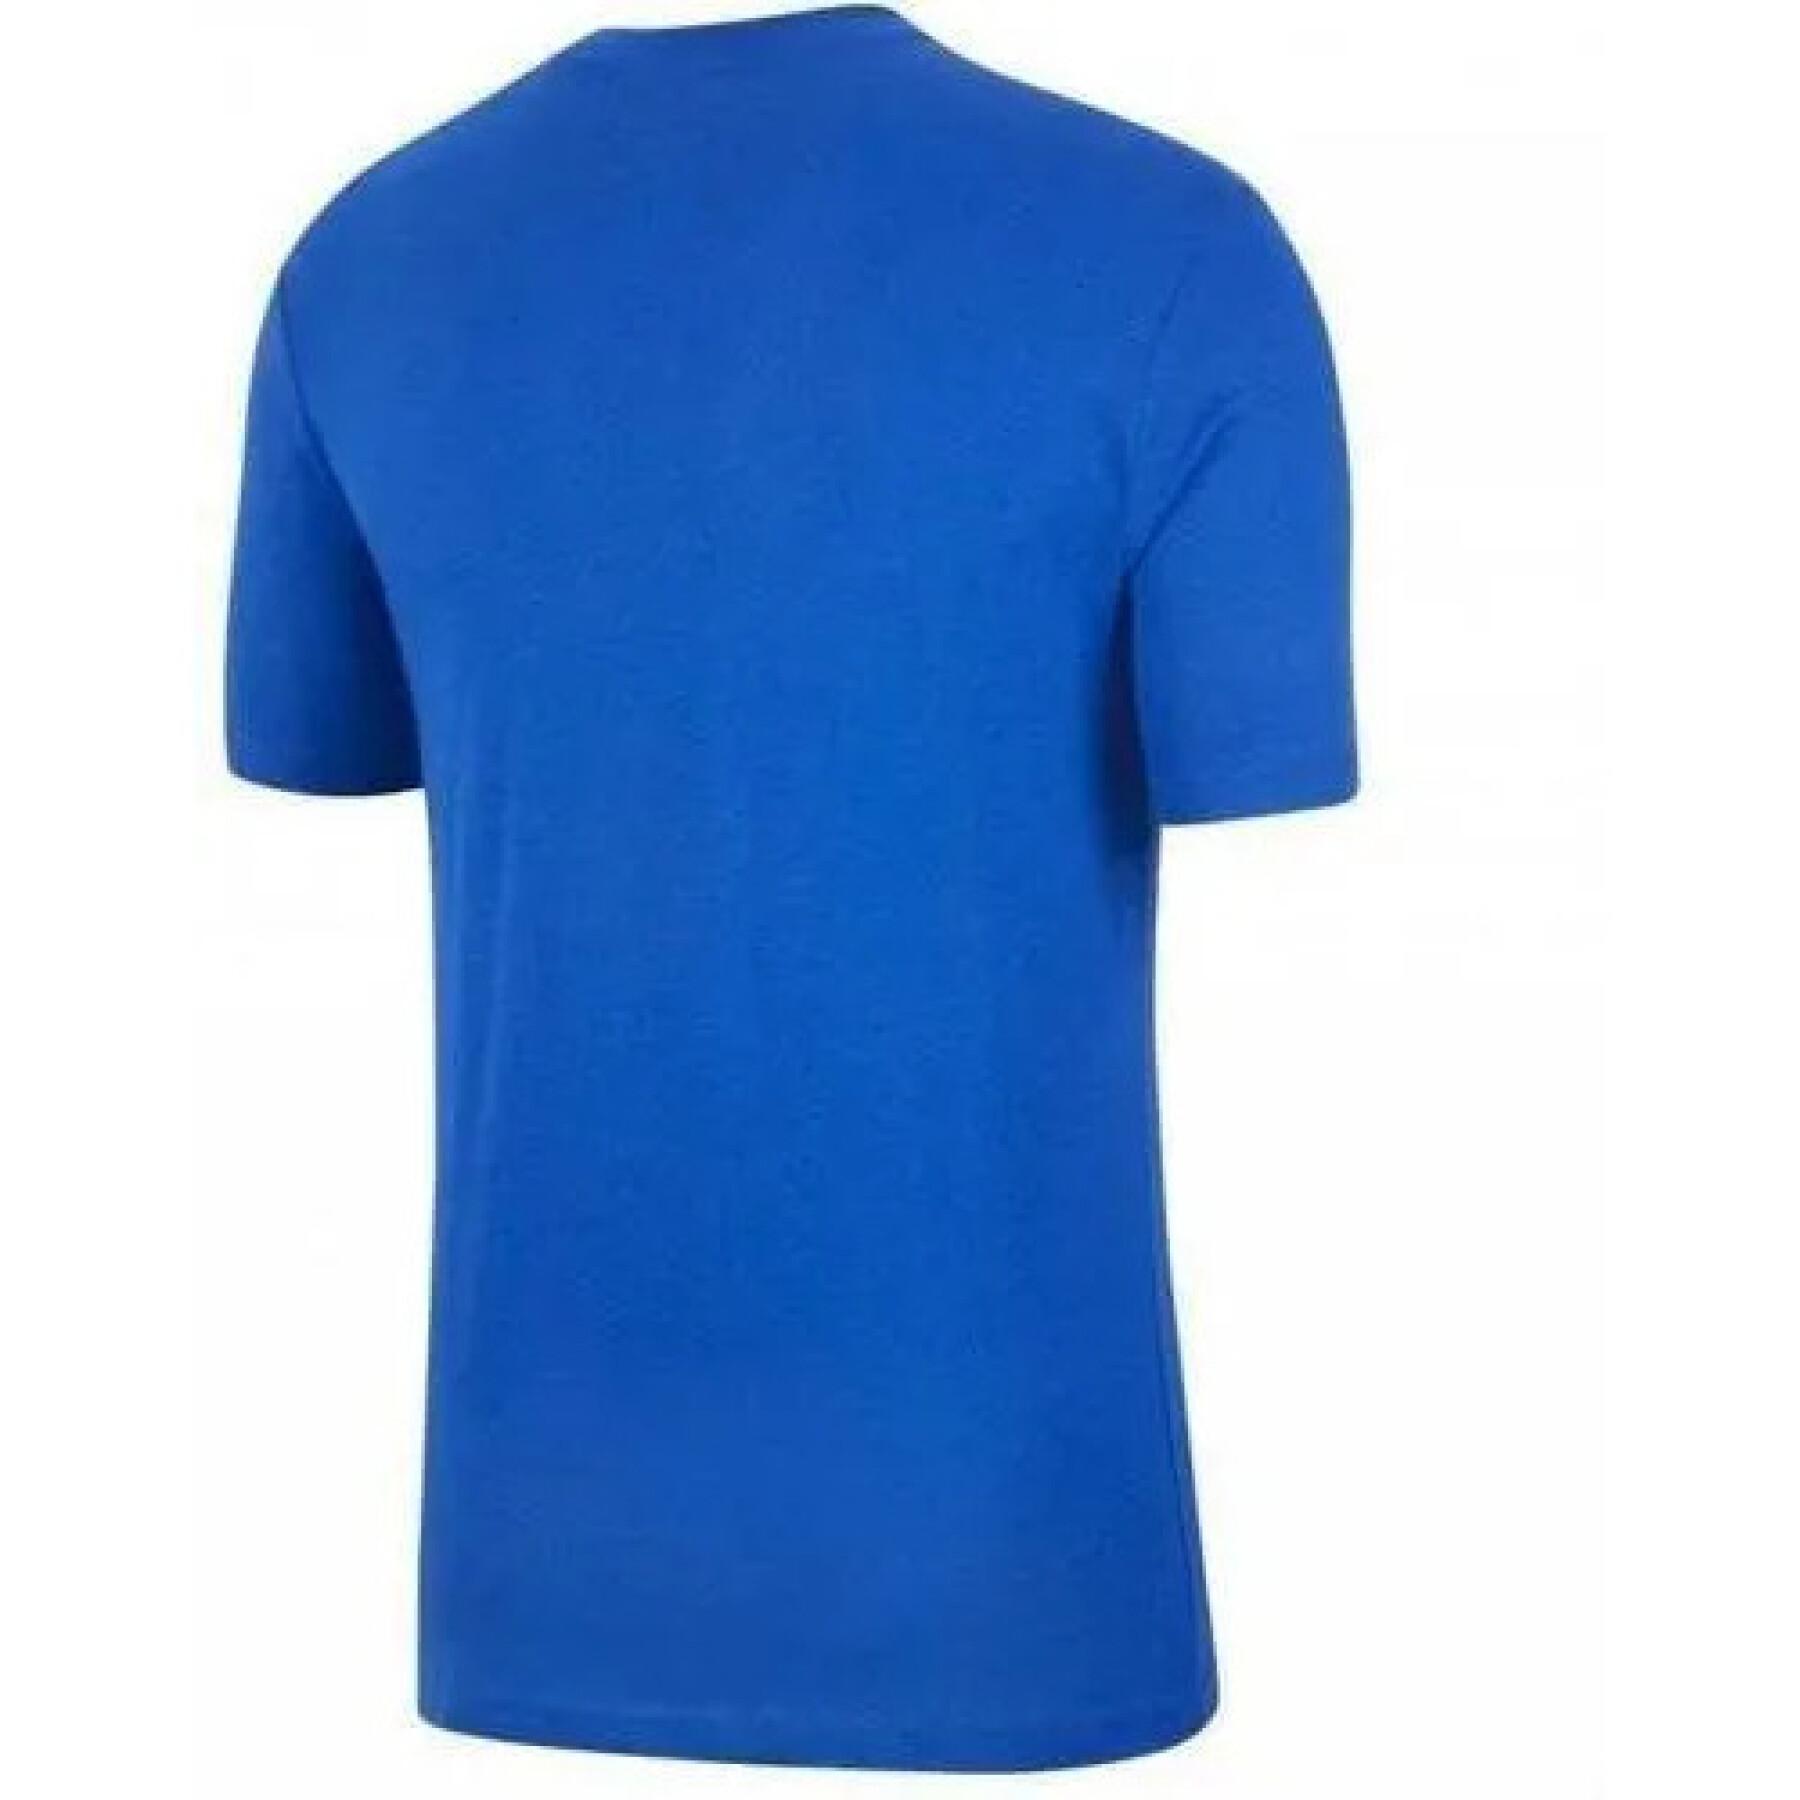 Chelsea evergreen crest - T-shirt för barn 2021/22